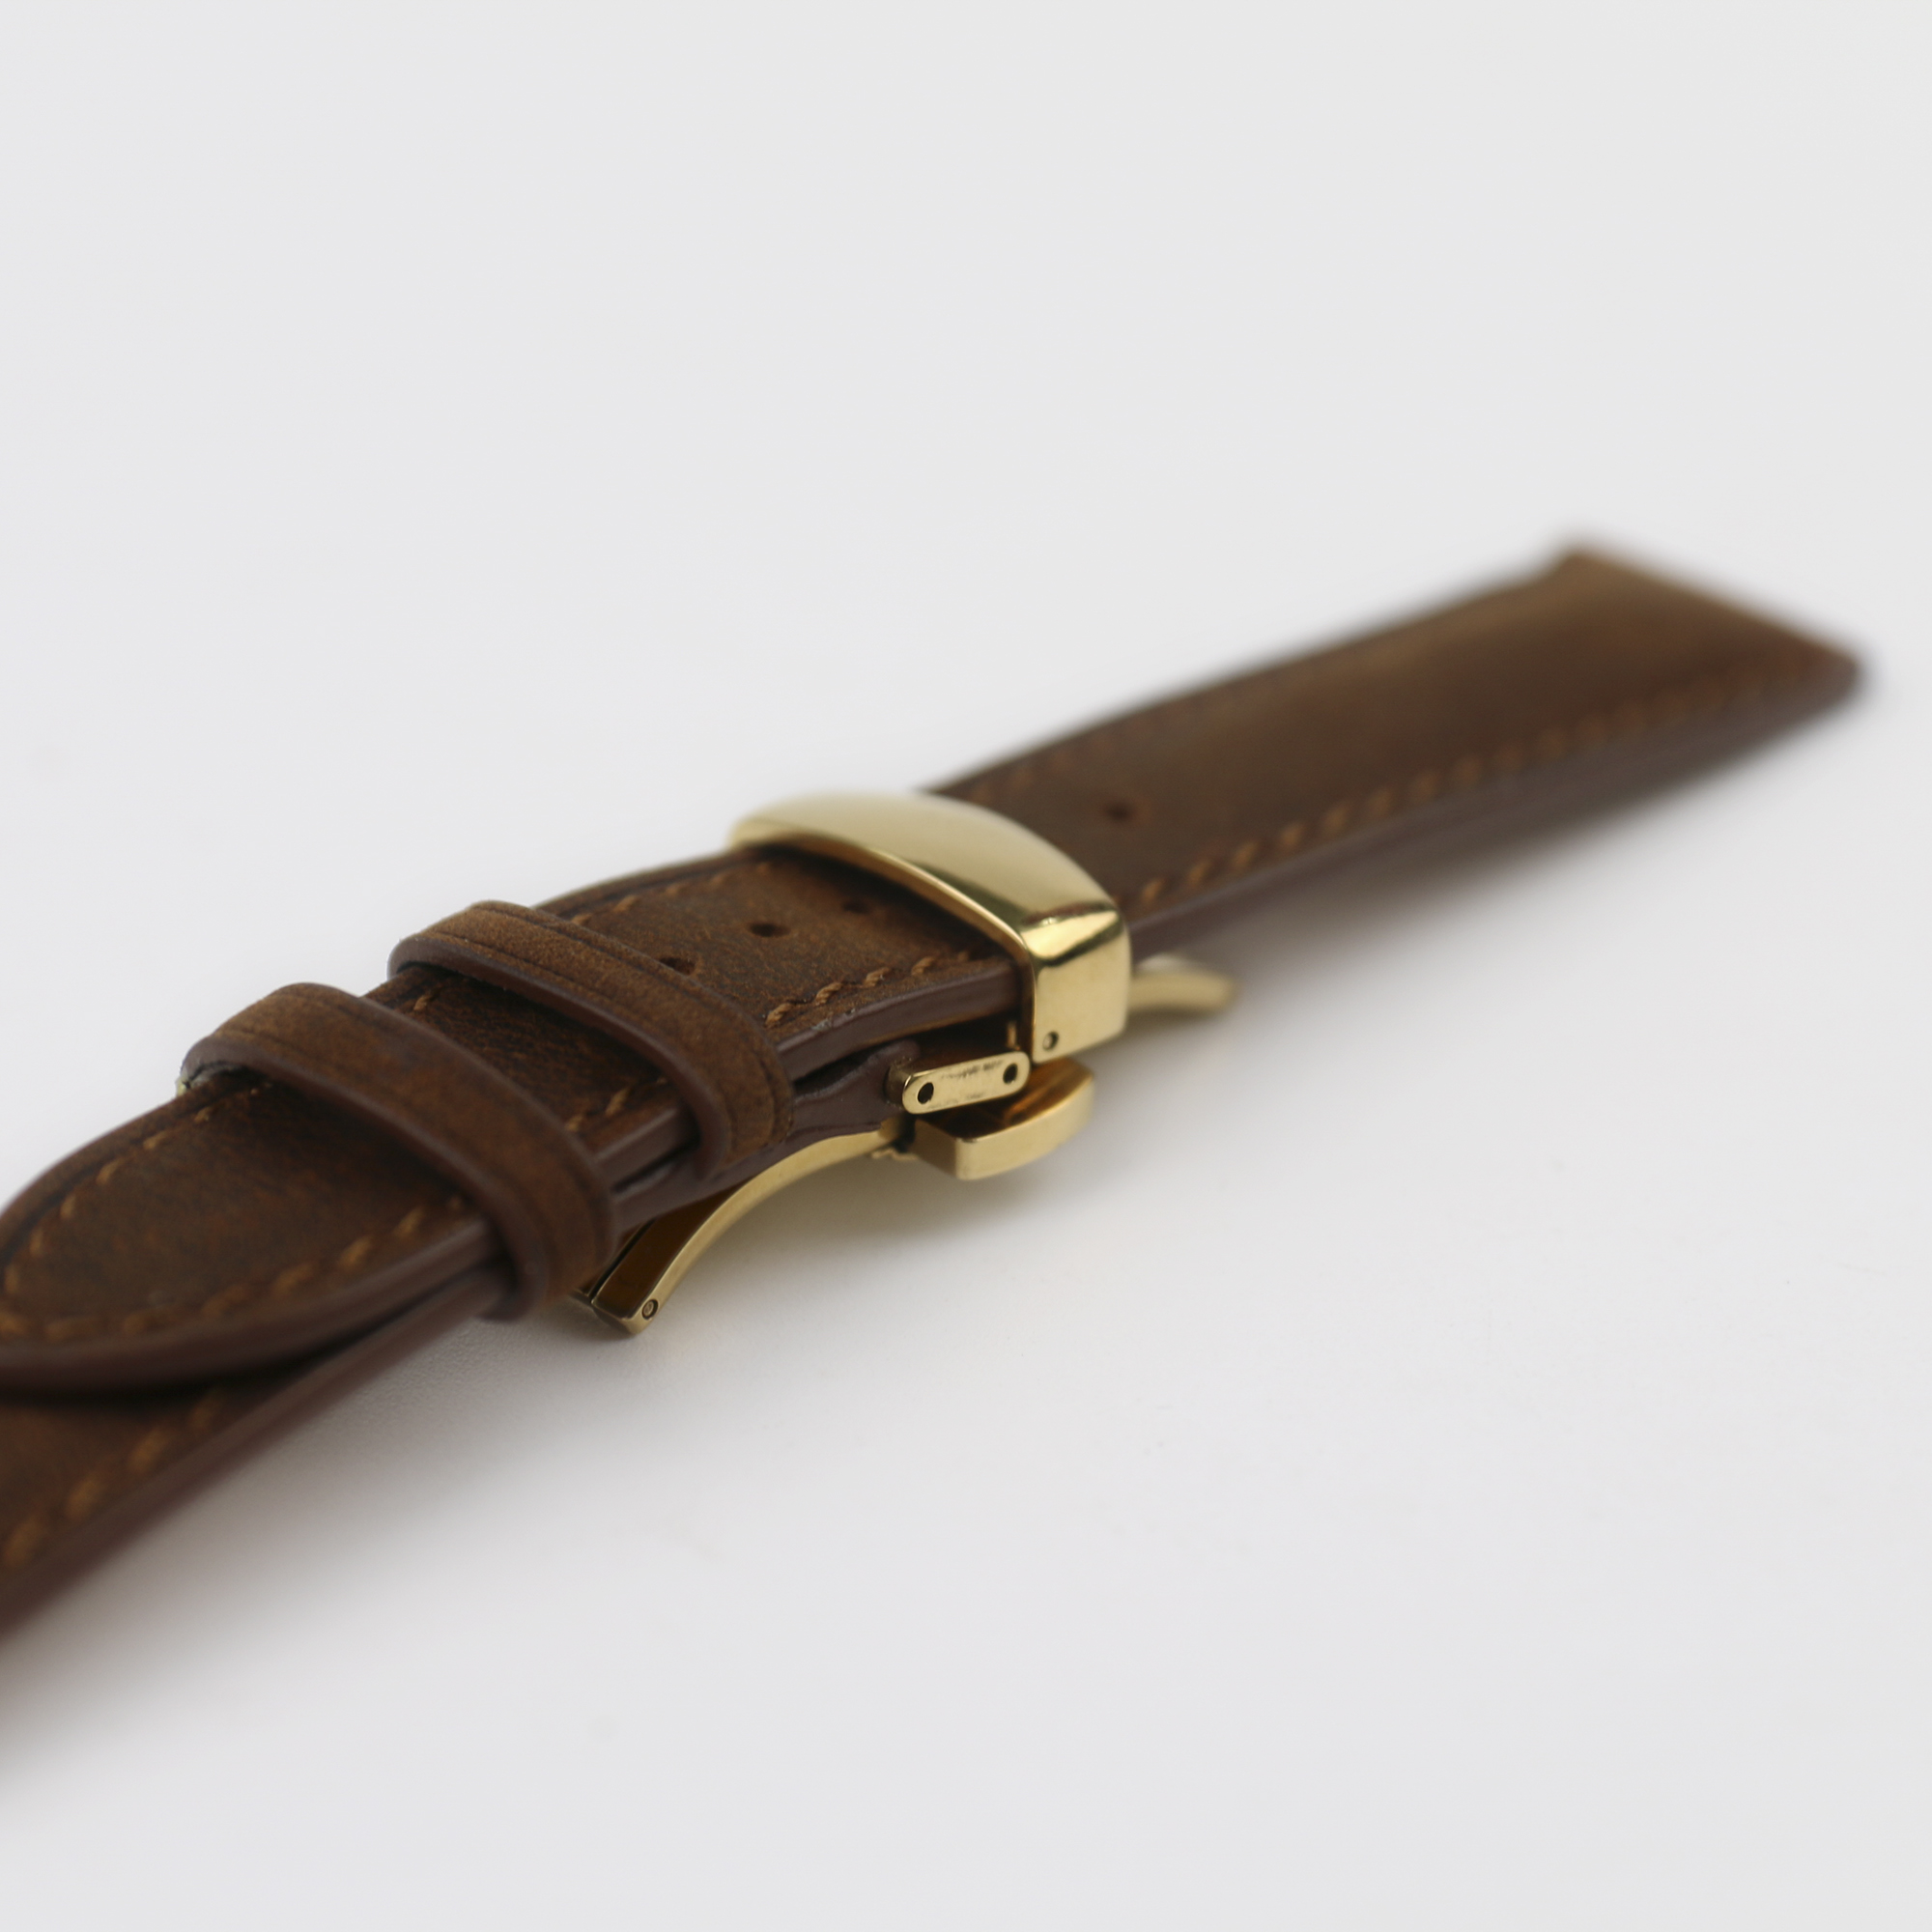 Dây đồng hồ da bò sáp (khoá kim+khoá bướm) dây da đồng hồ cao cấp handmade khâu tay thủ công size 18mm, 20mm, 22mm, 24mm